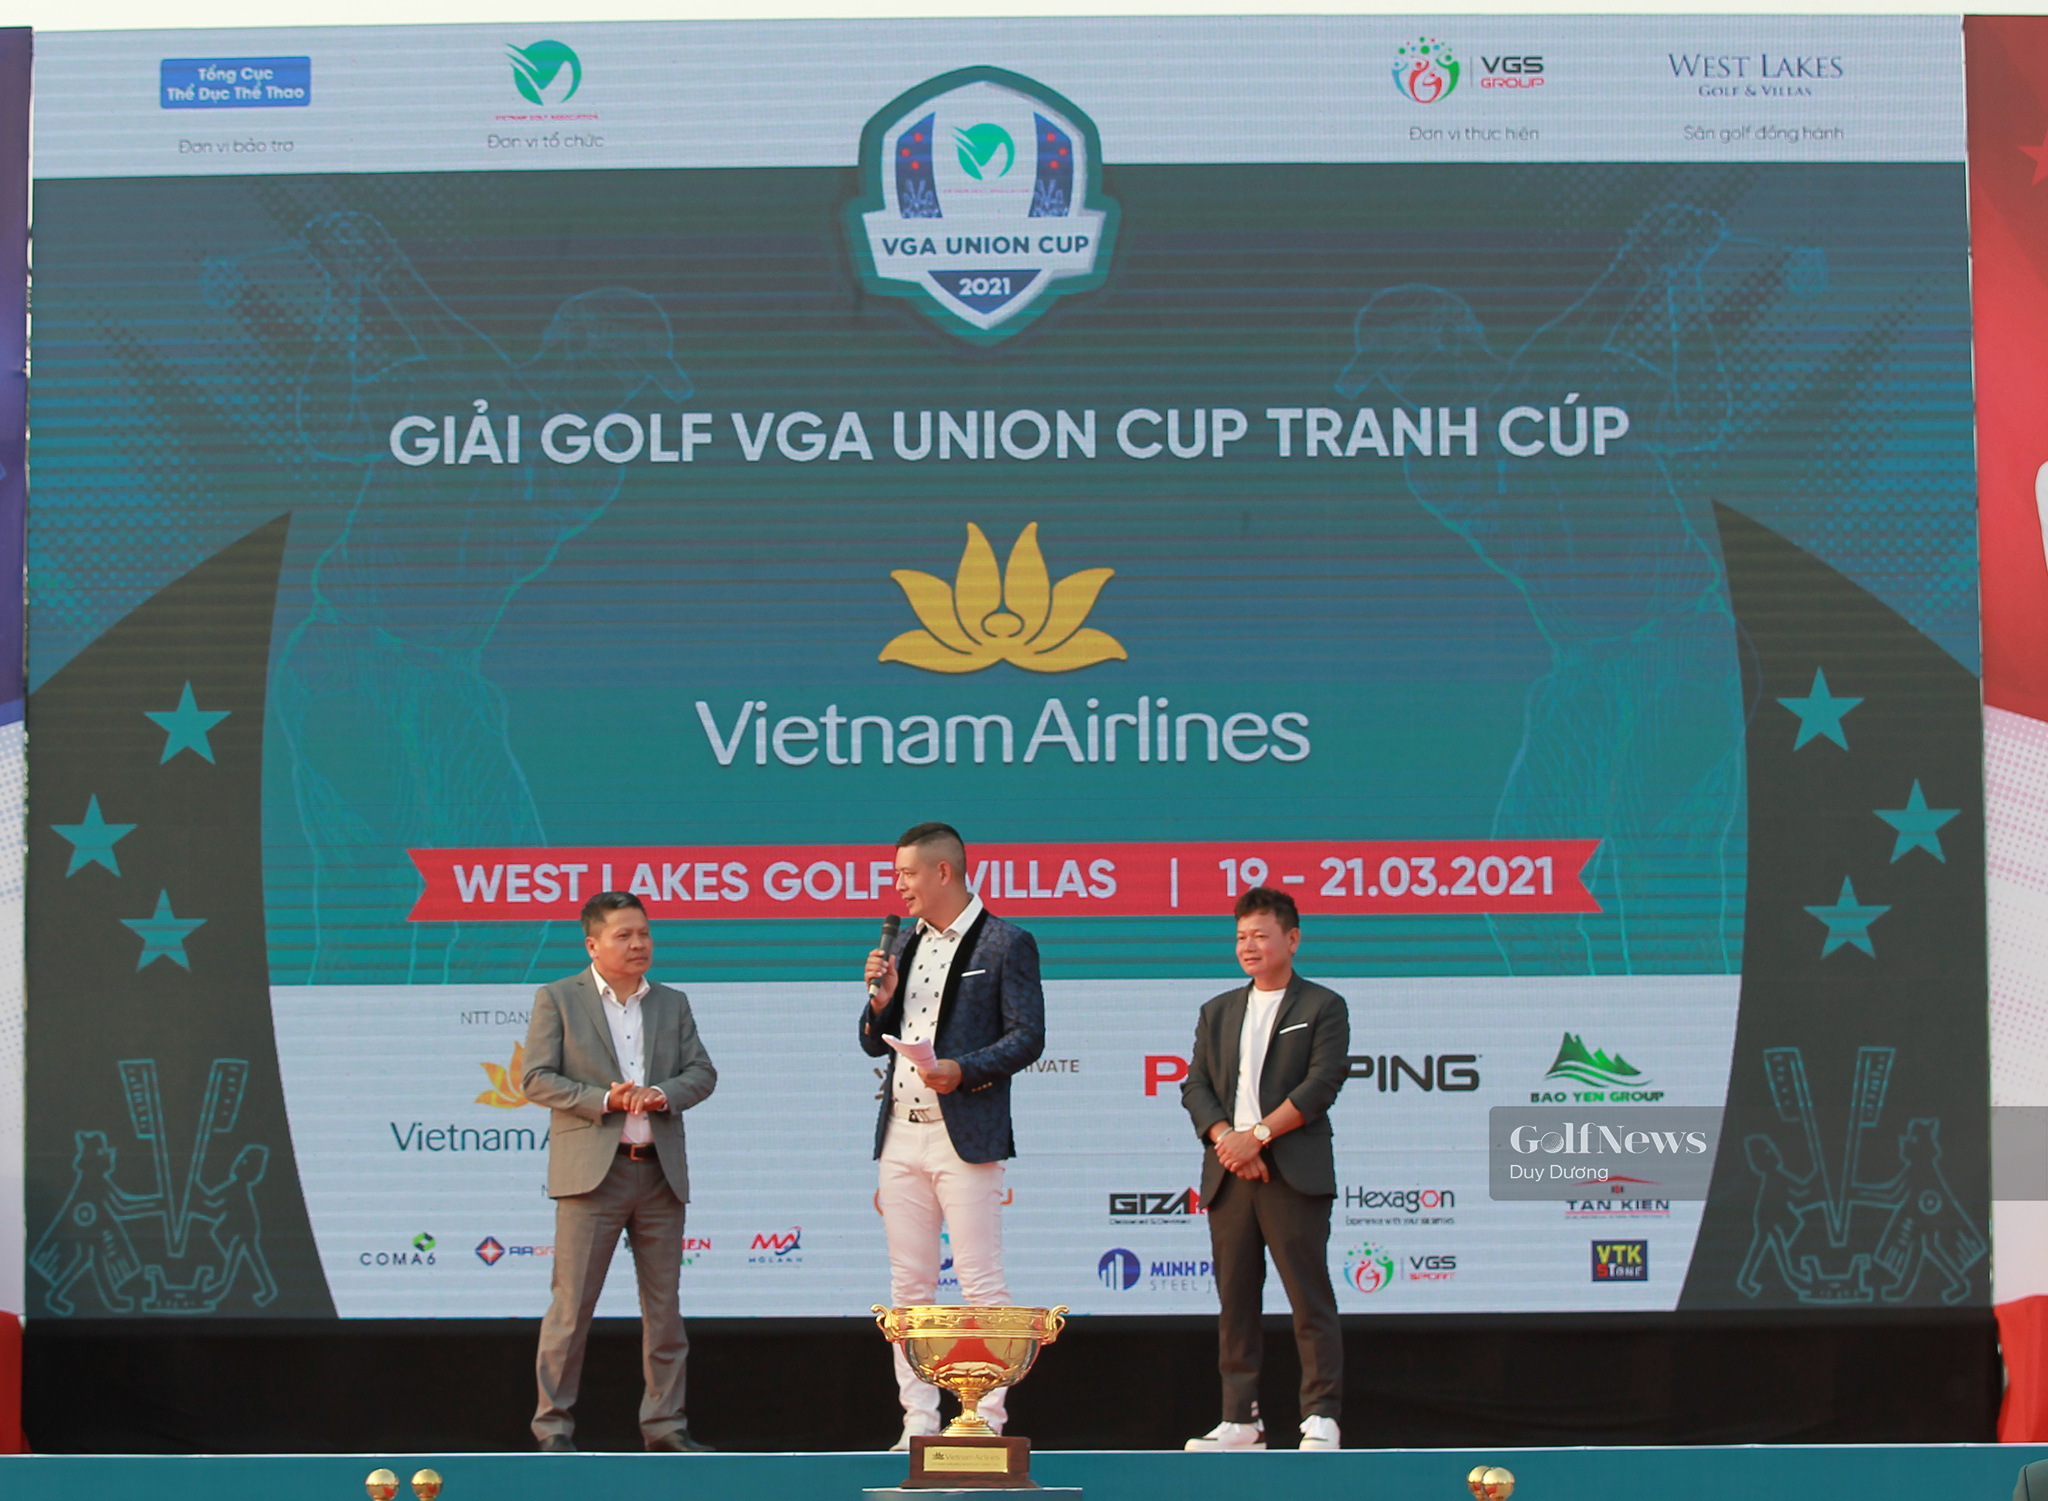 Lịch phát sóng trực tiếp VGA Union Cup tranh cúp Vietnam Airlines